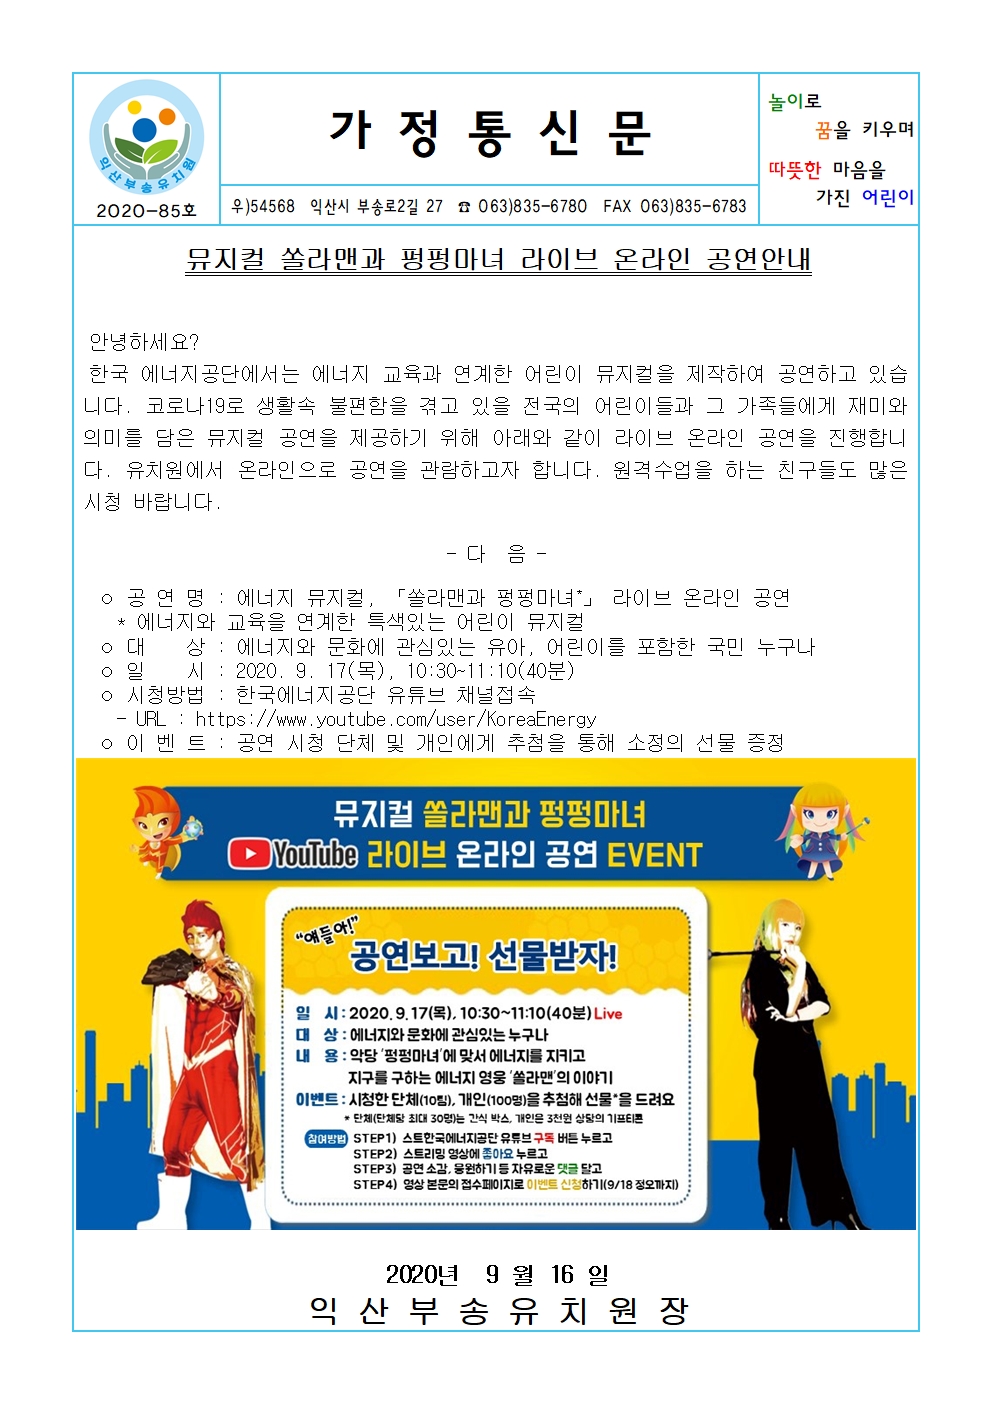 2020-85호 뮤지컬 쏠라맨과 펑펑마녀 라이브 온라인 공연안내(20.09.16.)